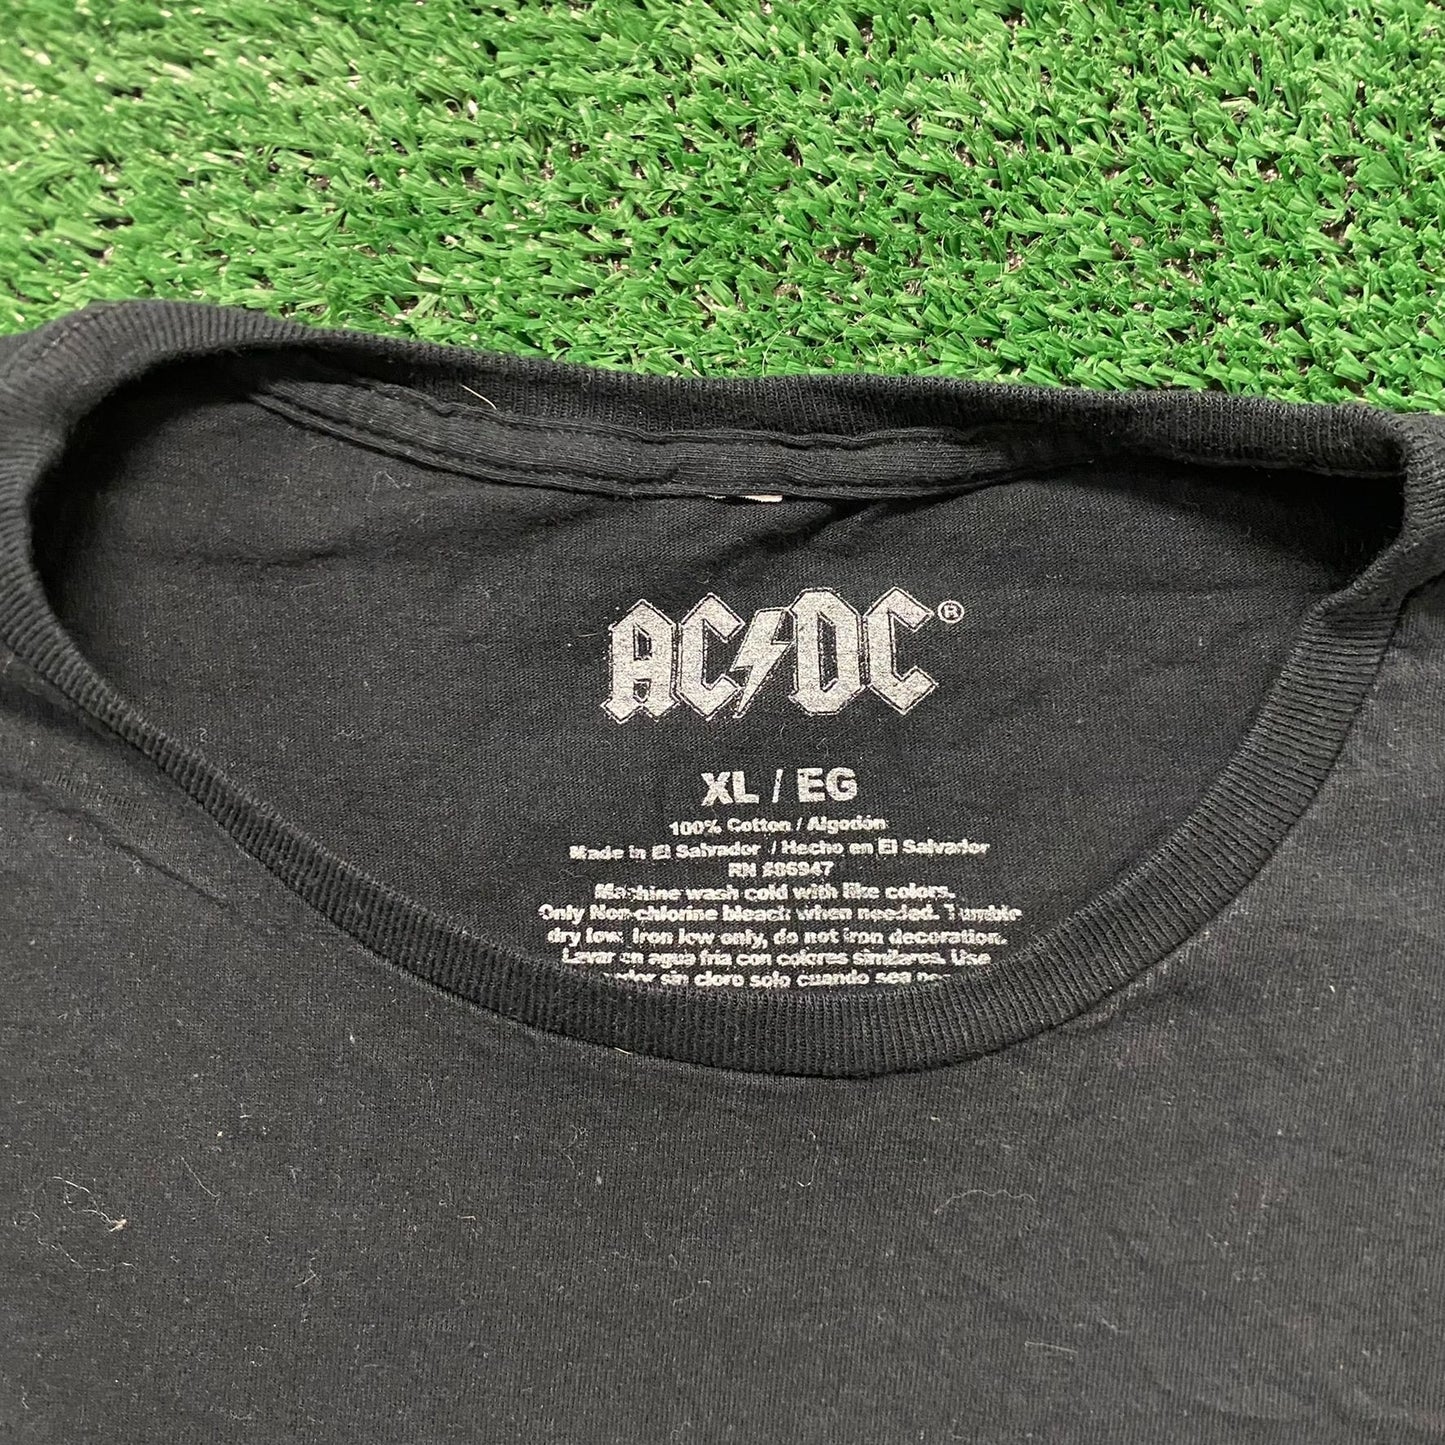 AC/DC Back in Black Vintage Rock Band T-Shirt